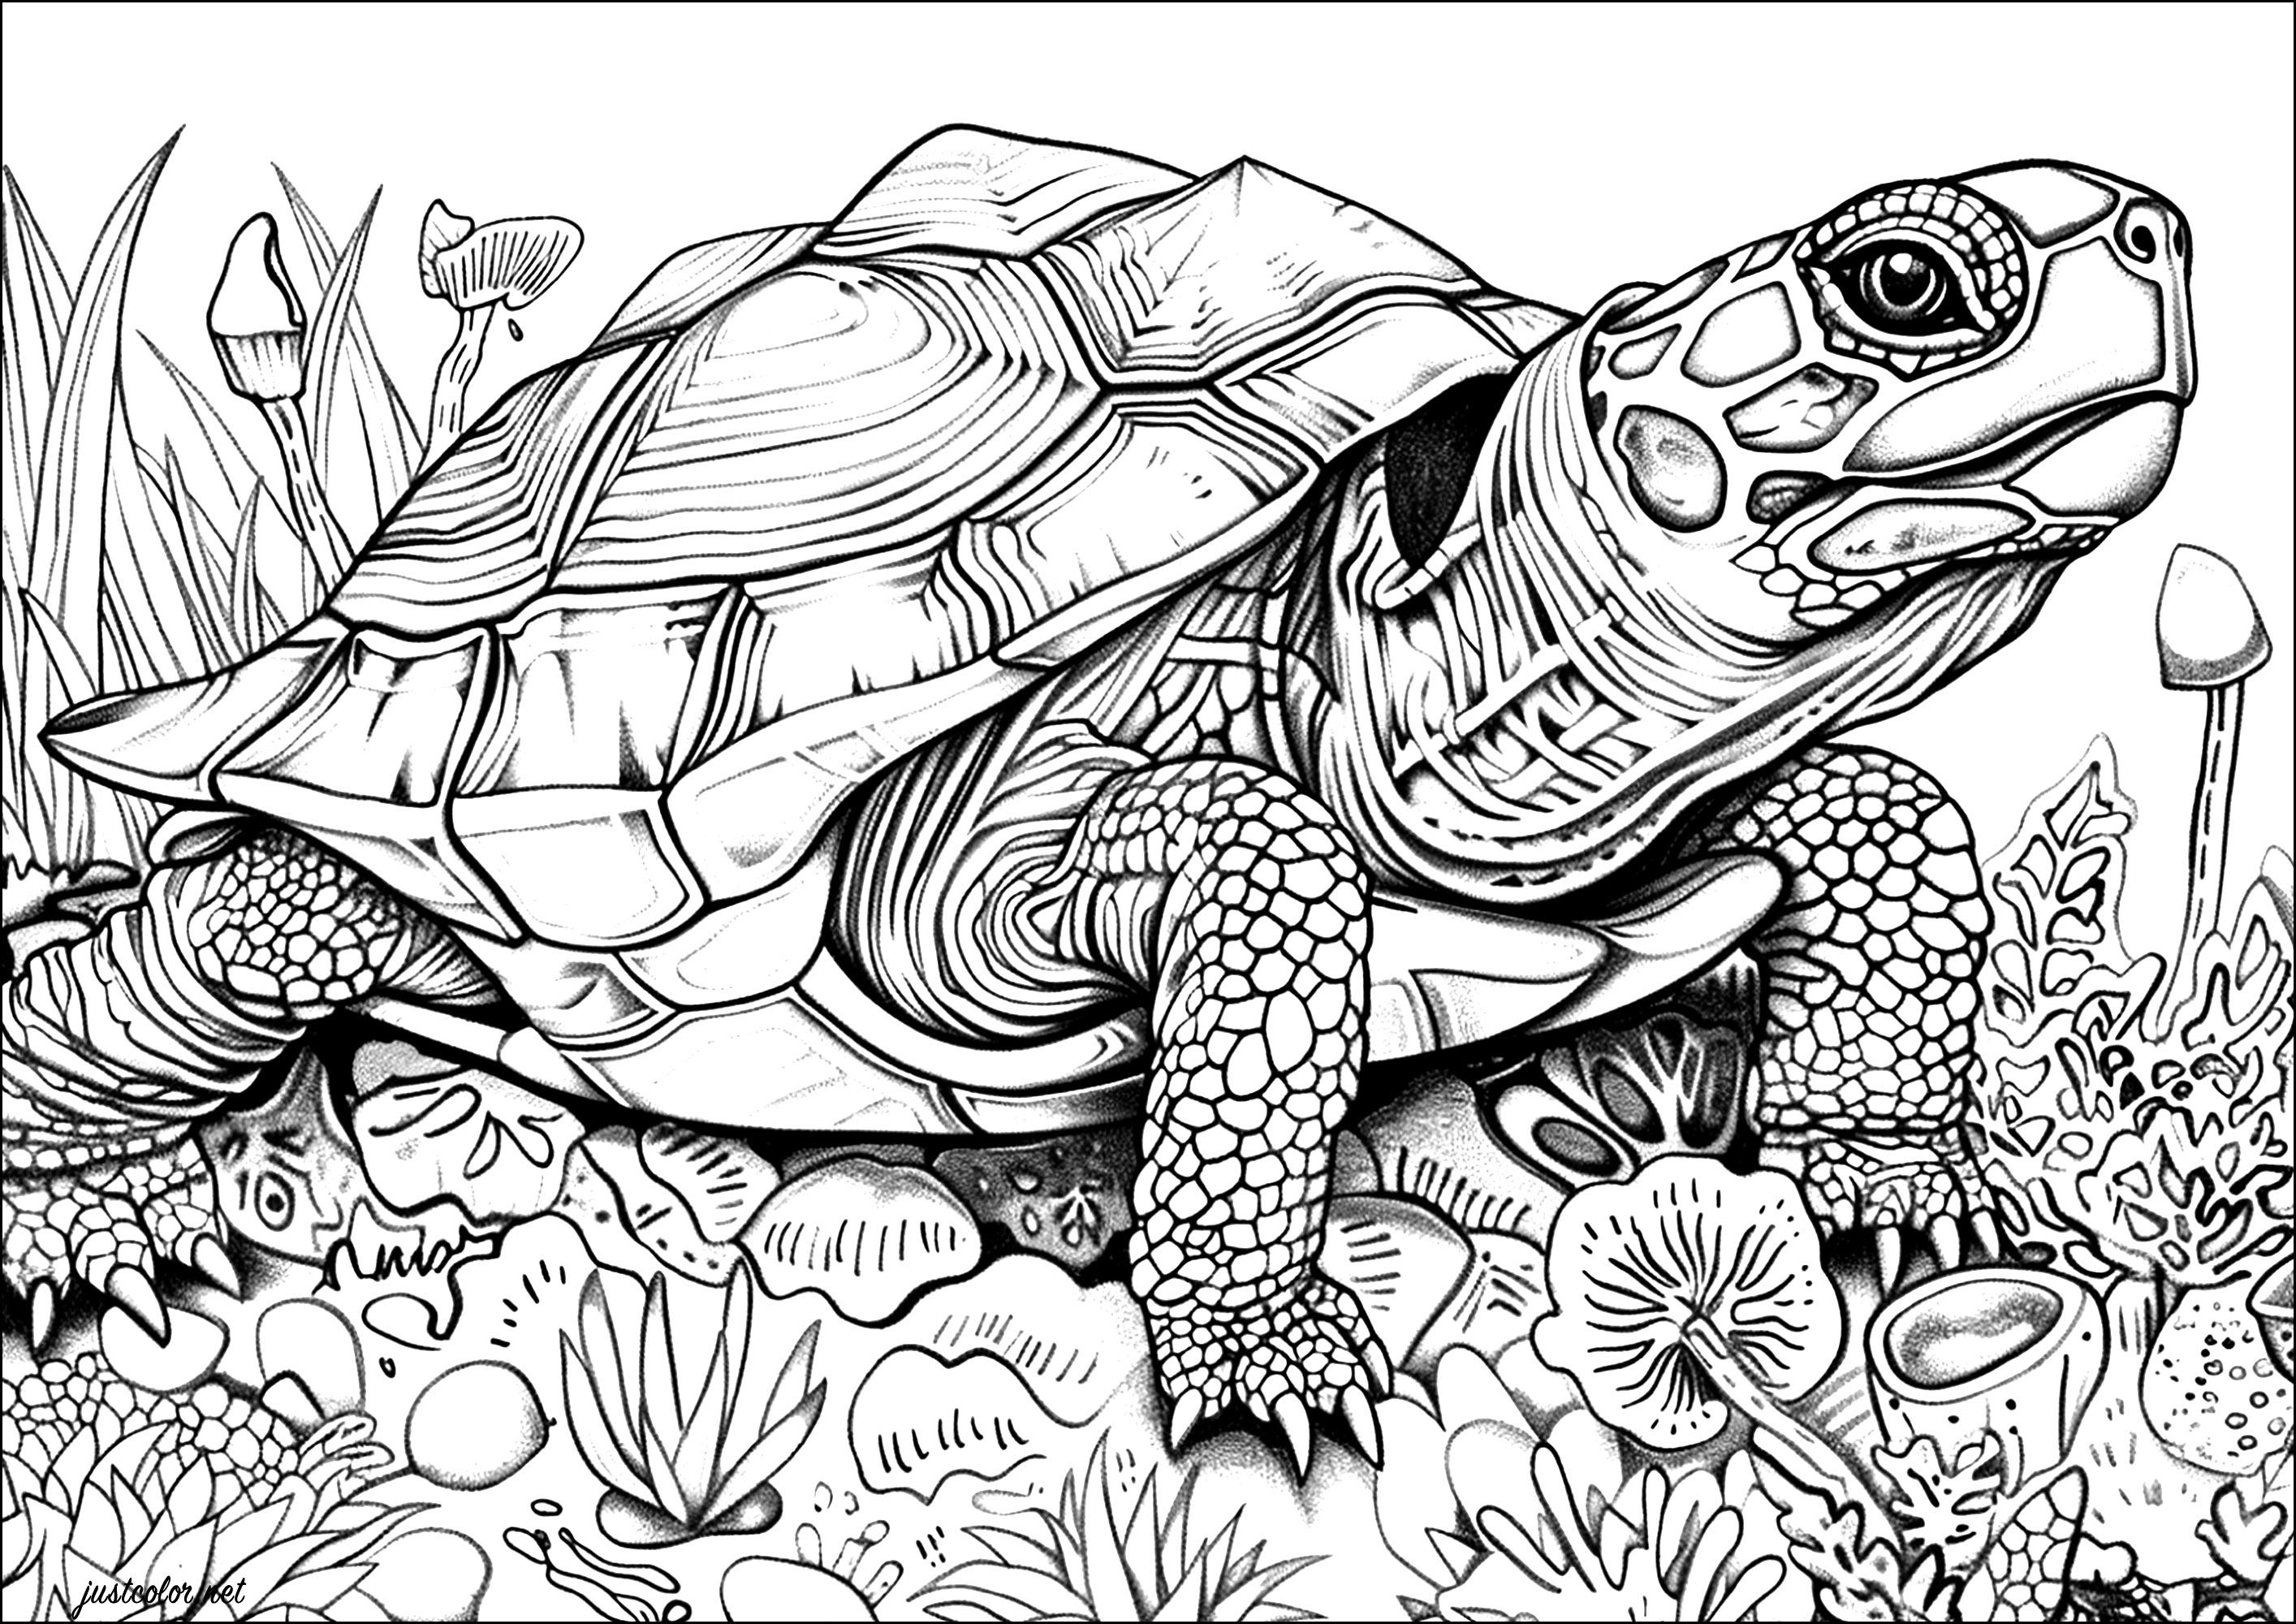 Página para colorir de tartaruga realista com muitos pormenores para colorir. As escamas do casco desta tartaruga estão meticulosamente representadas, dando a impressão de poder tocar-lhes com a ponta dos dedos.Pegue nos seus lápis de cor ou canetas de feltro e deixe-se levar pela beleza desta majestosa tartaruga.